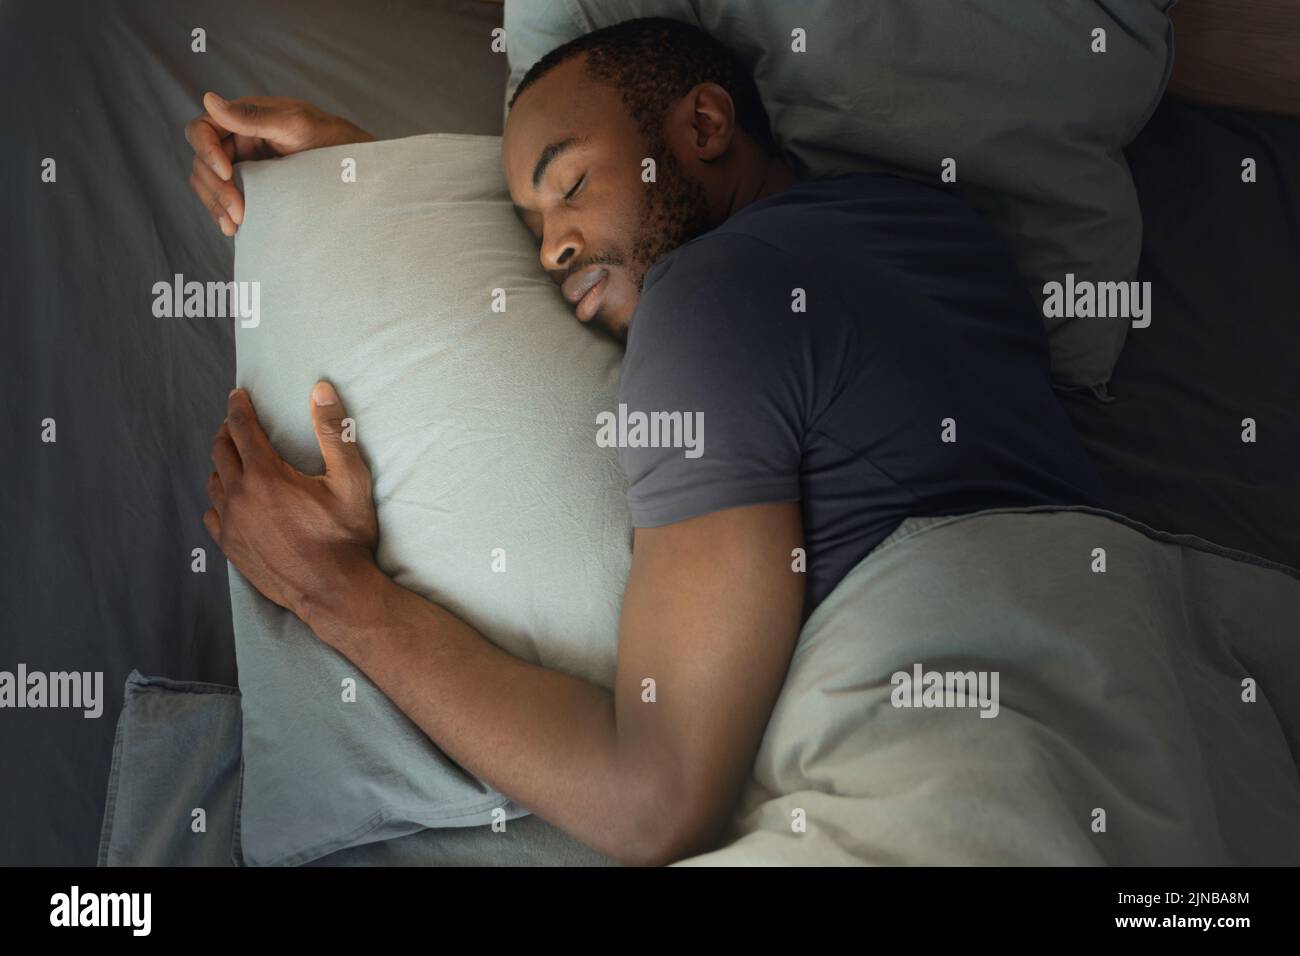 Vista superior del hombre africano durmiendo abrazando la almohada en la habitación Foto de stock